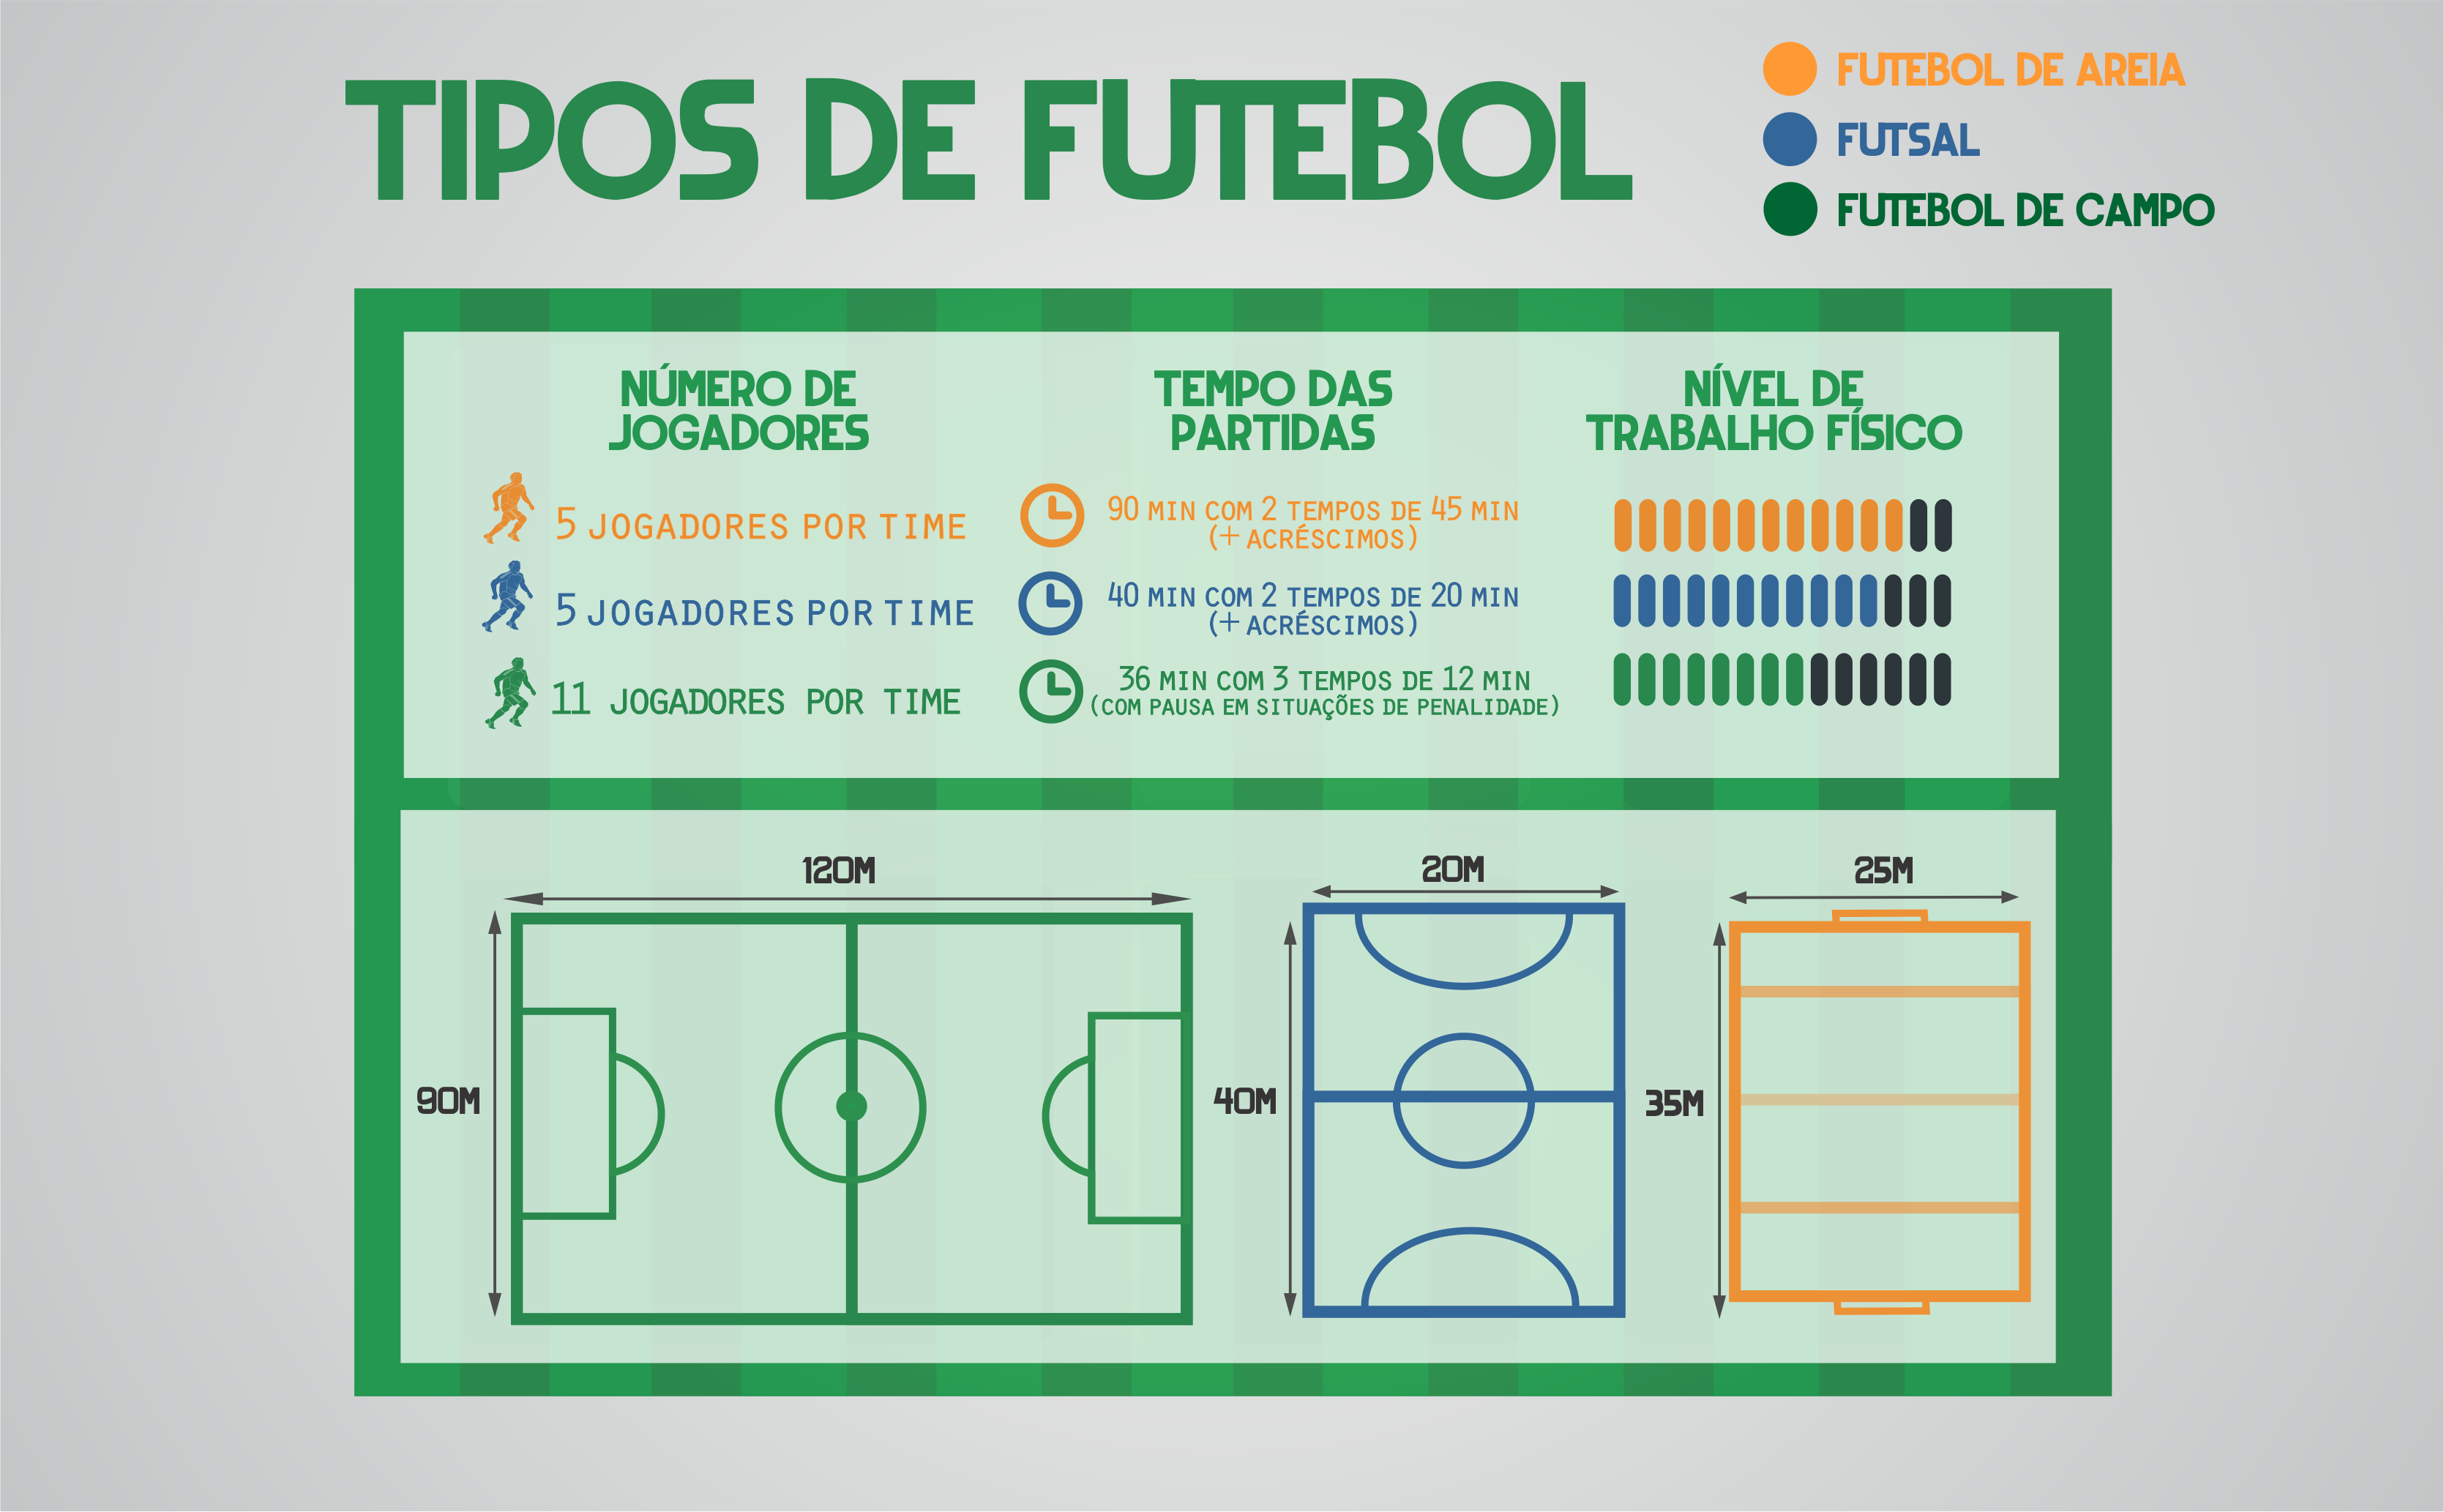 Regras do Futsal - Futebol de Salão